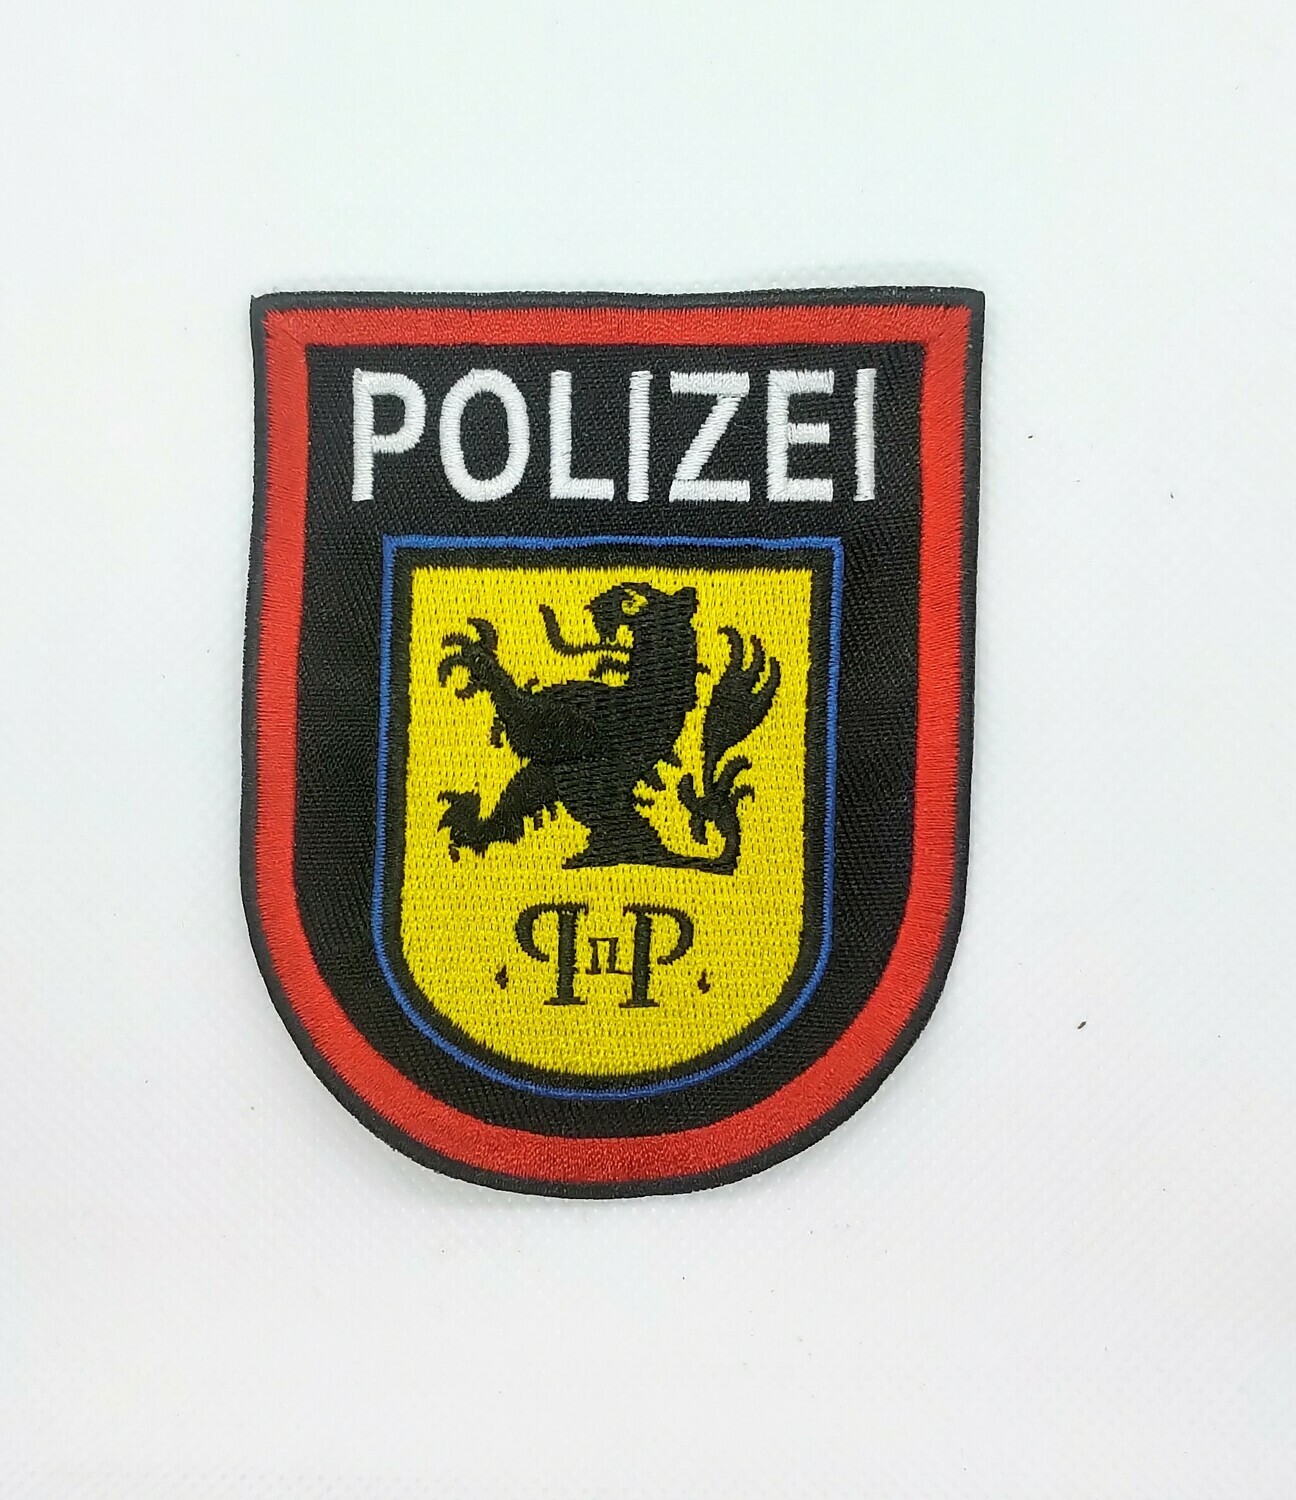 Polizei badge